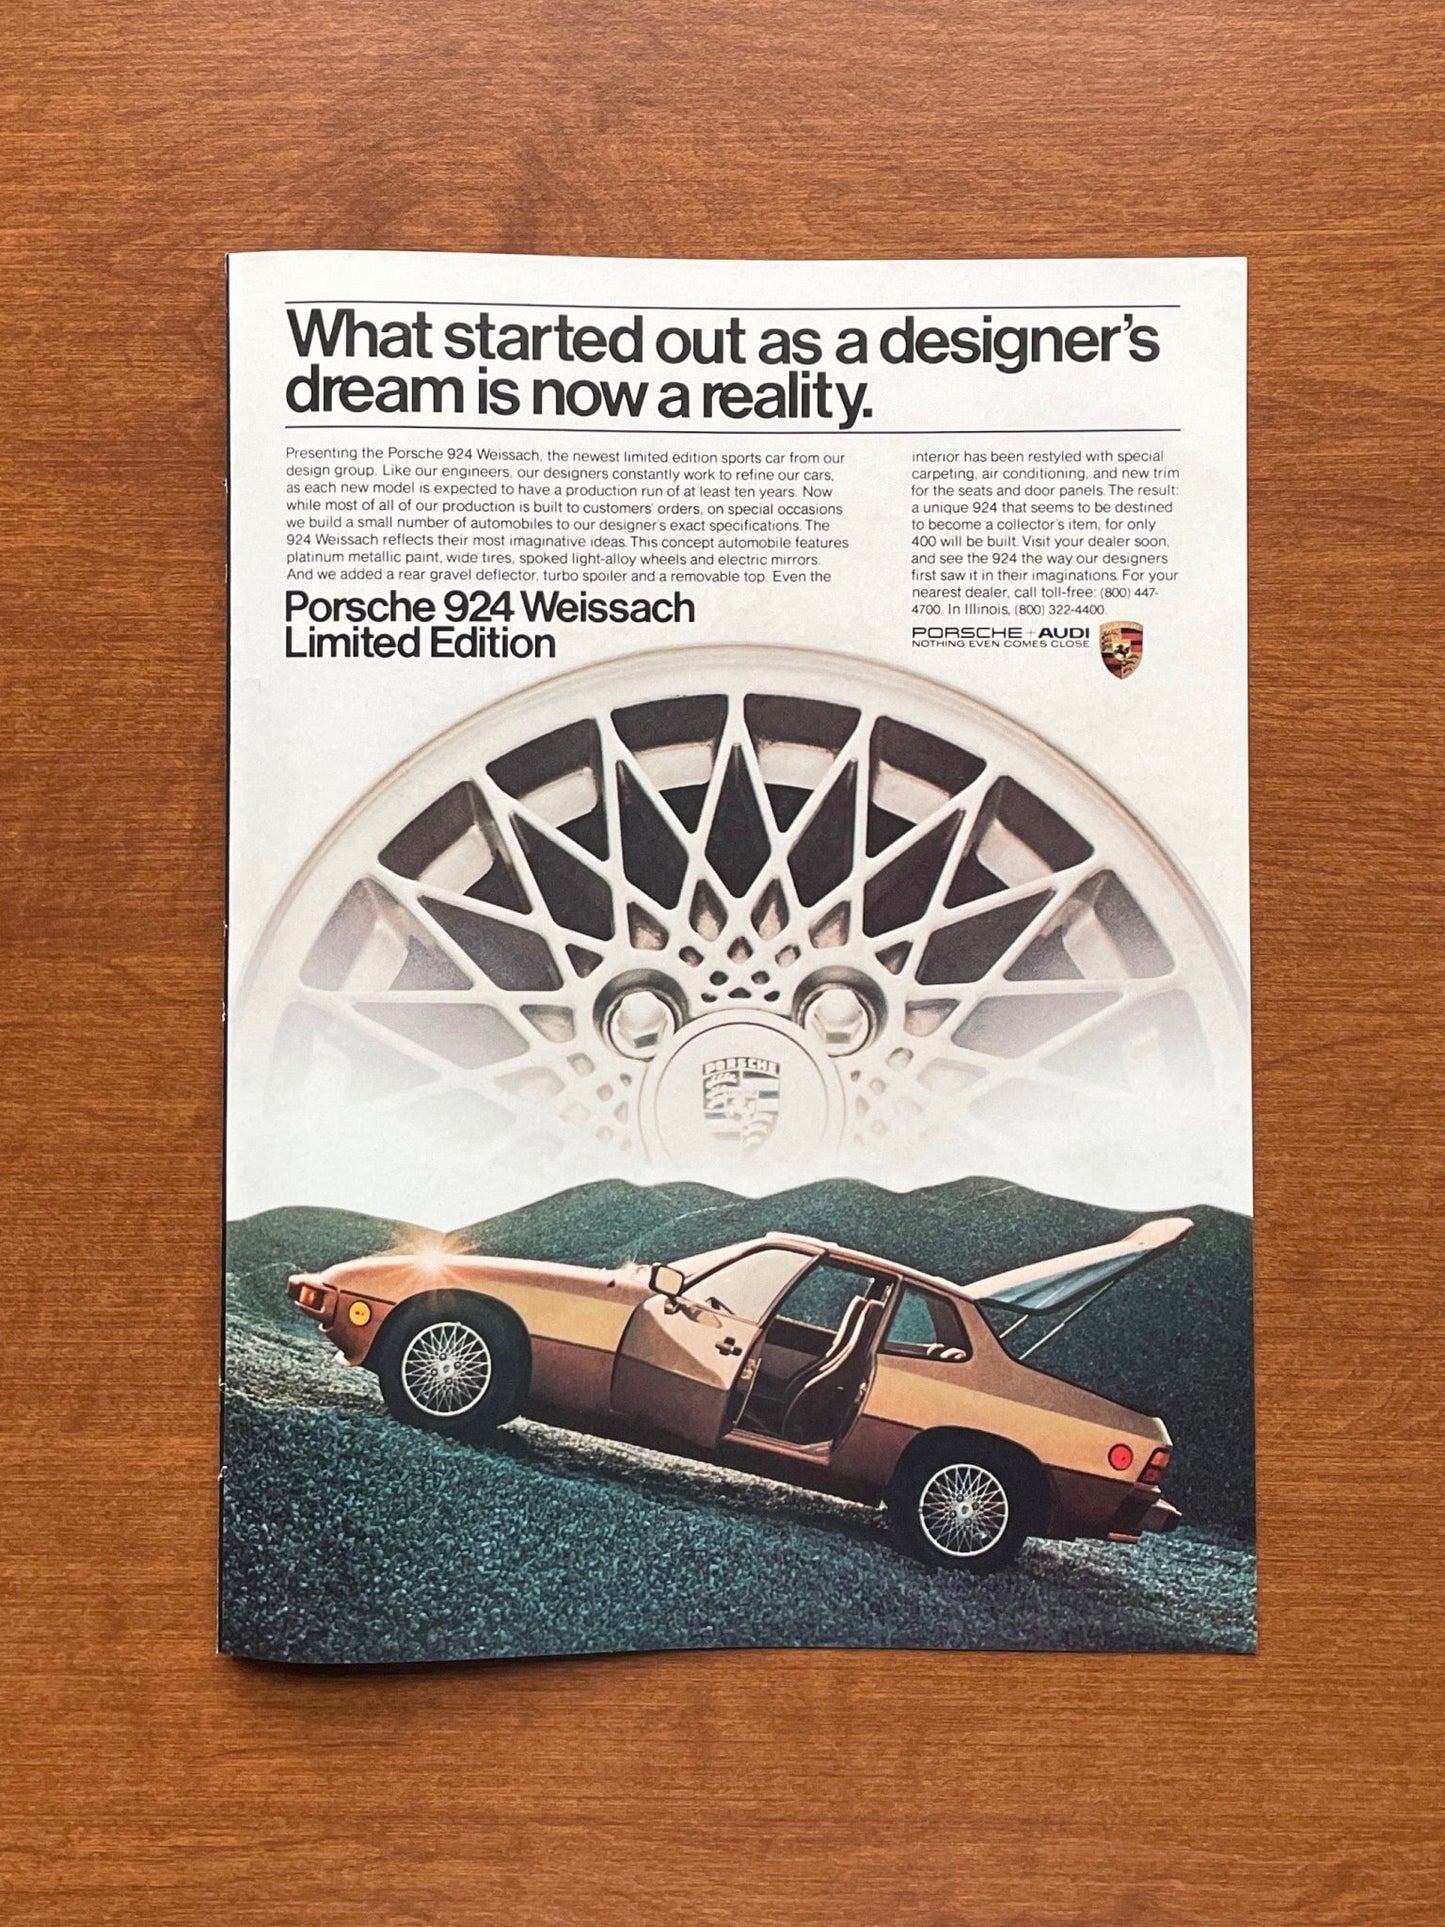 1981 Porsche 924 Weissach Limited Edition Advertisement